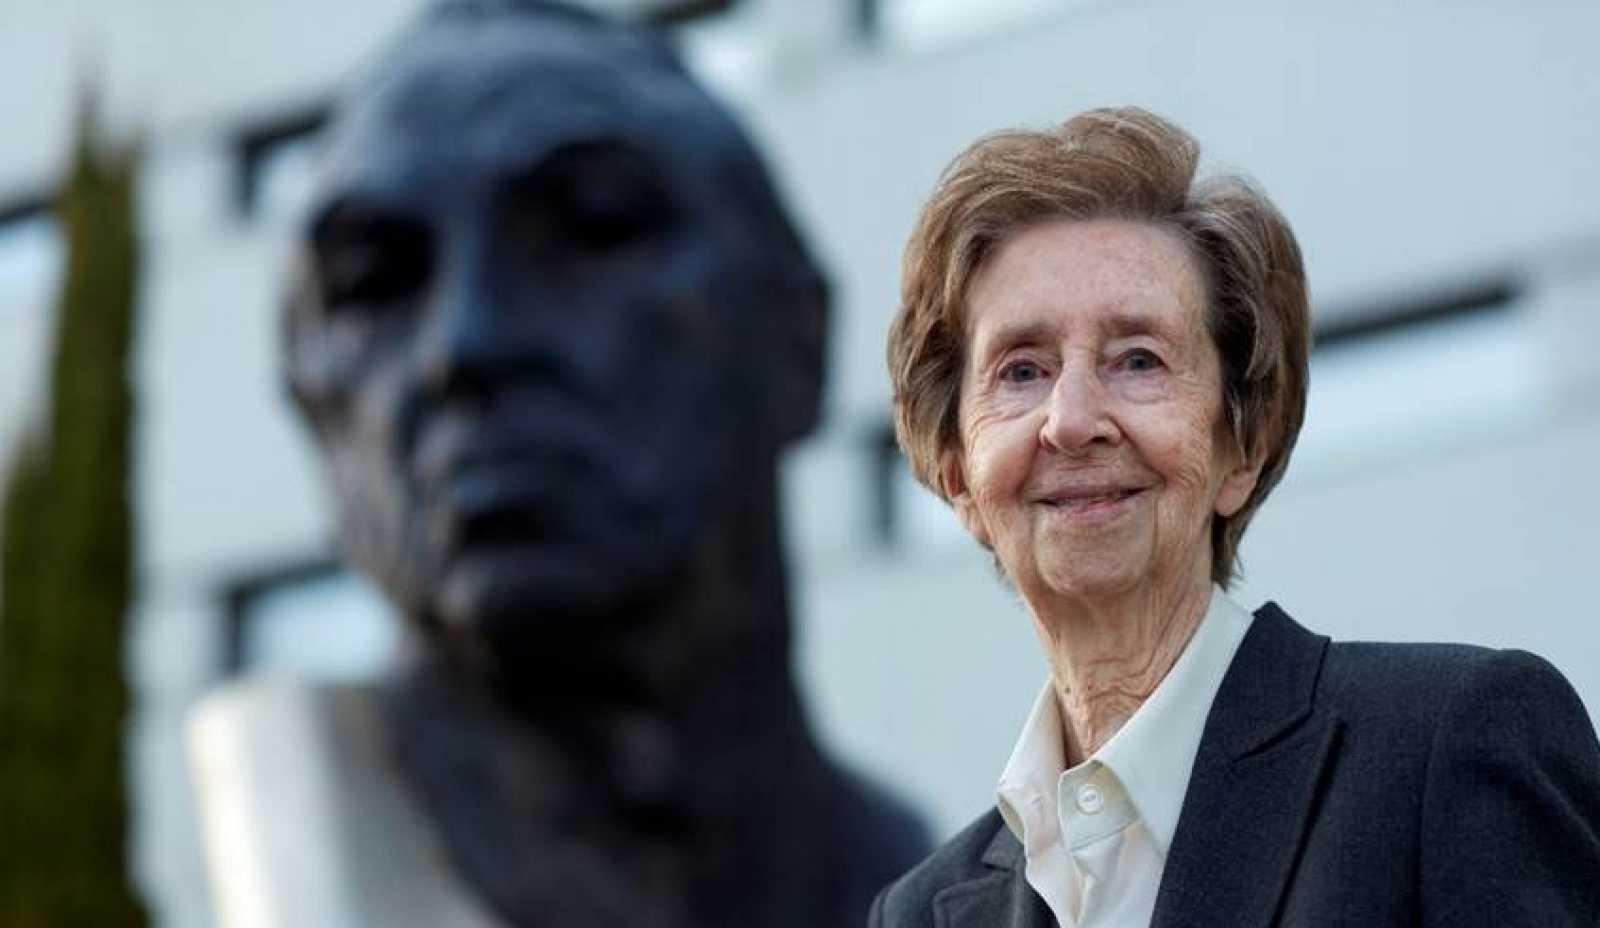 Juntos paso a paso de RNE homenajea a Margarita Salas con la colaboración de Eulalia Pérez Sedeño (IFS) y Envejecimiento en red (IEGD)